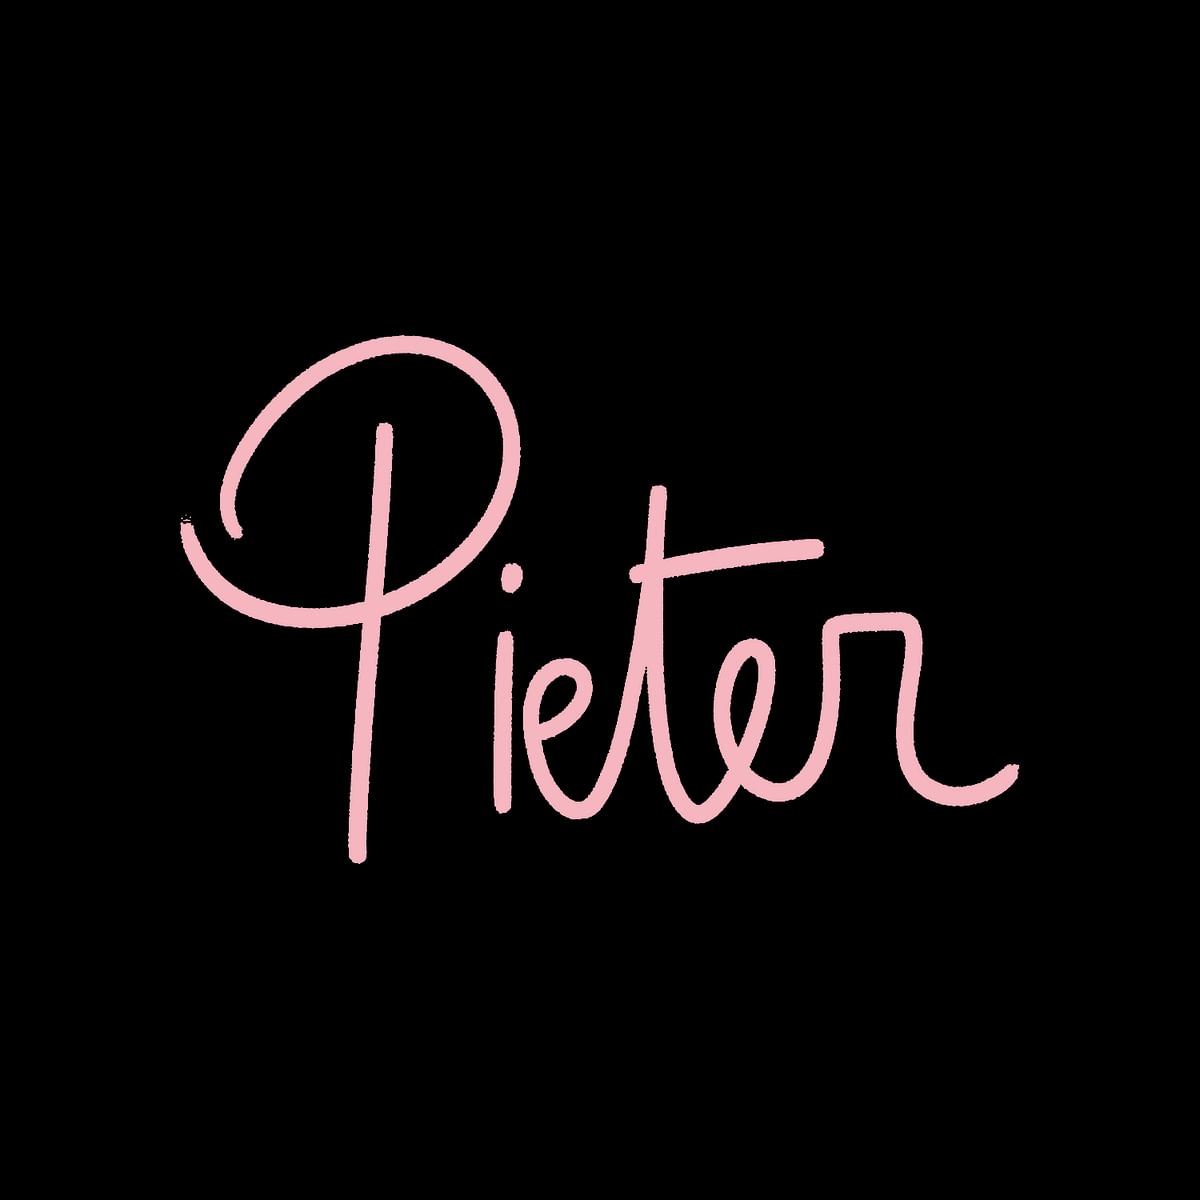 Pieter